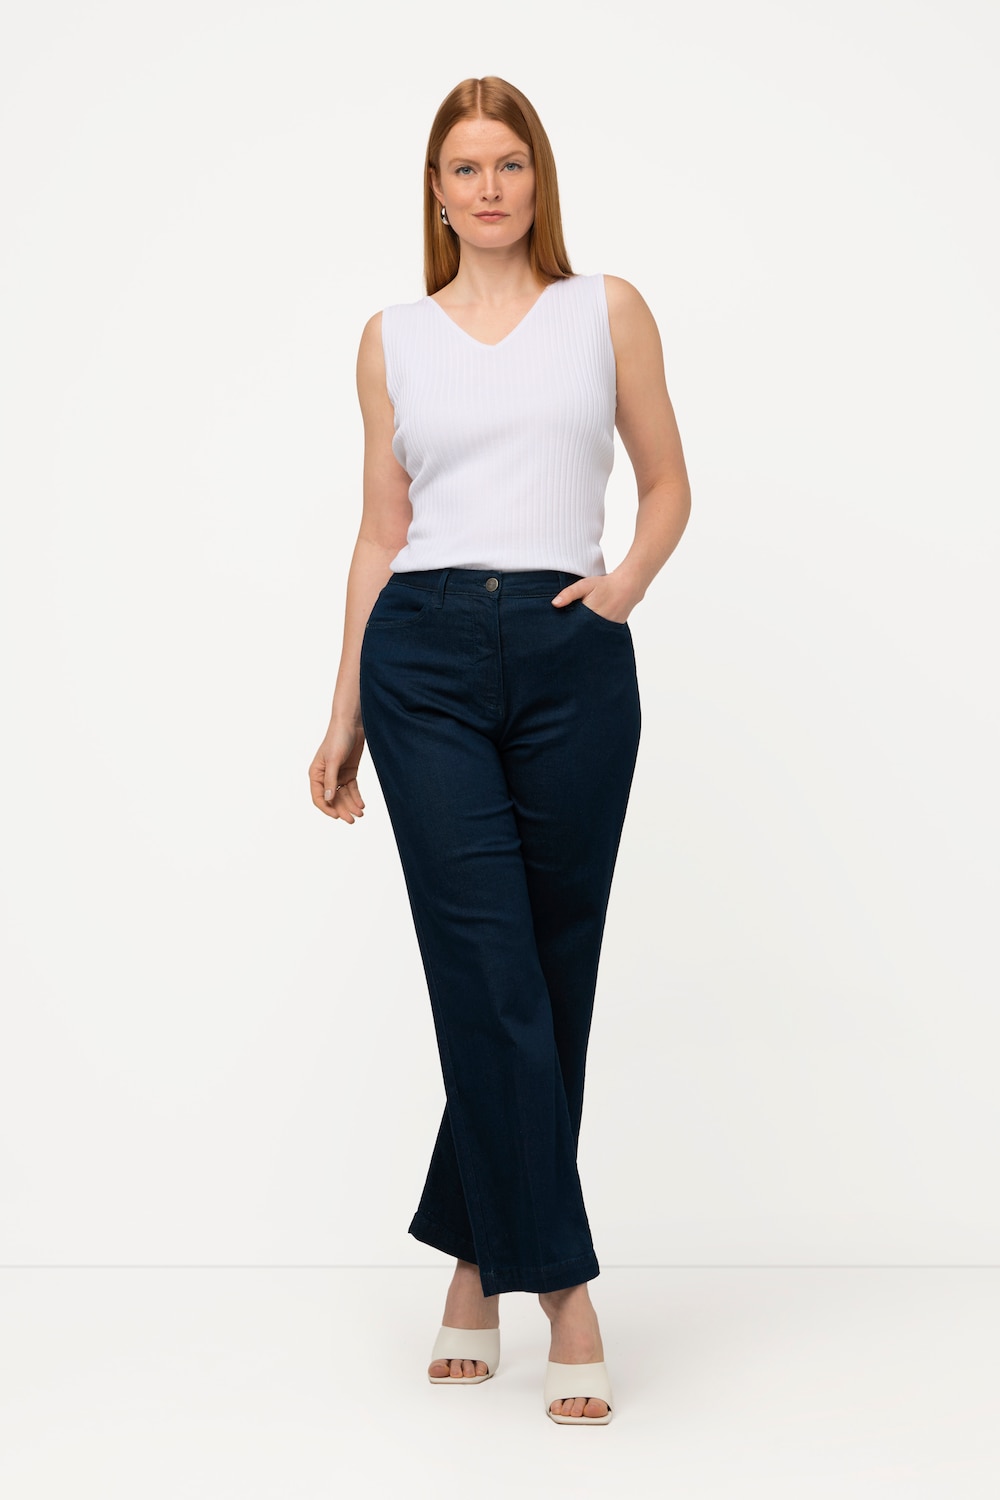 Grote Maten jeans, Dames, blauw, Maat: 48, Katoen/Synthetische vezels, Ulla Popken